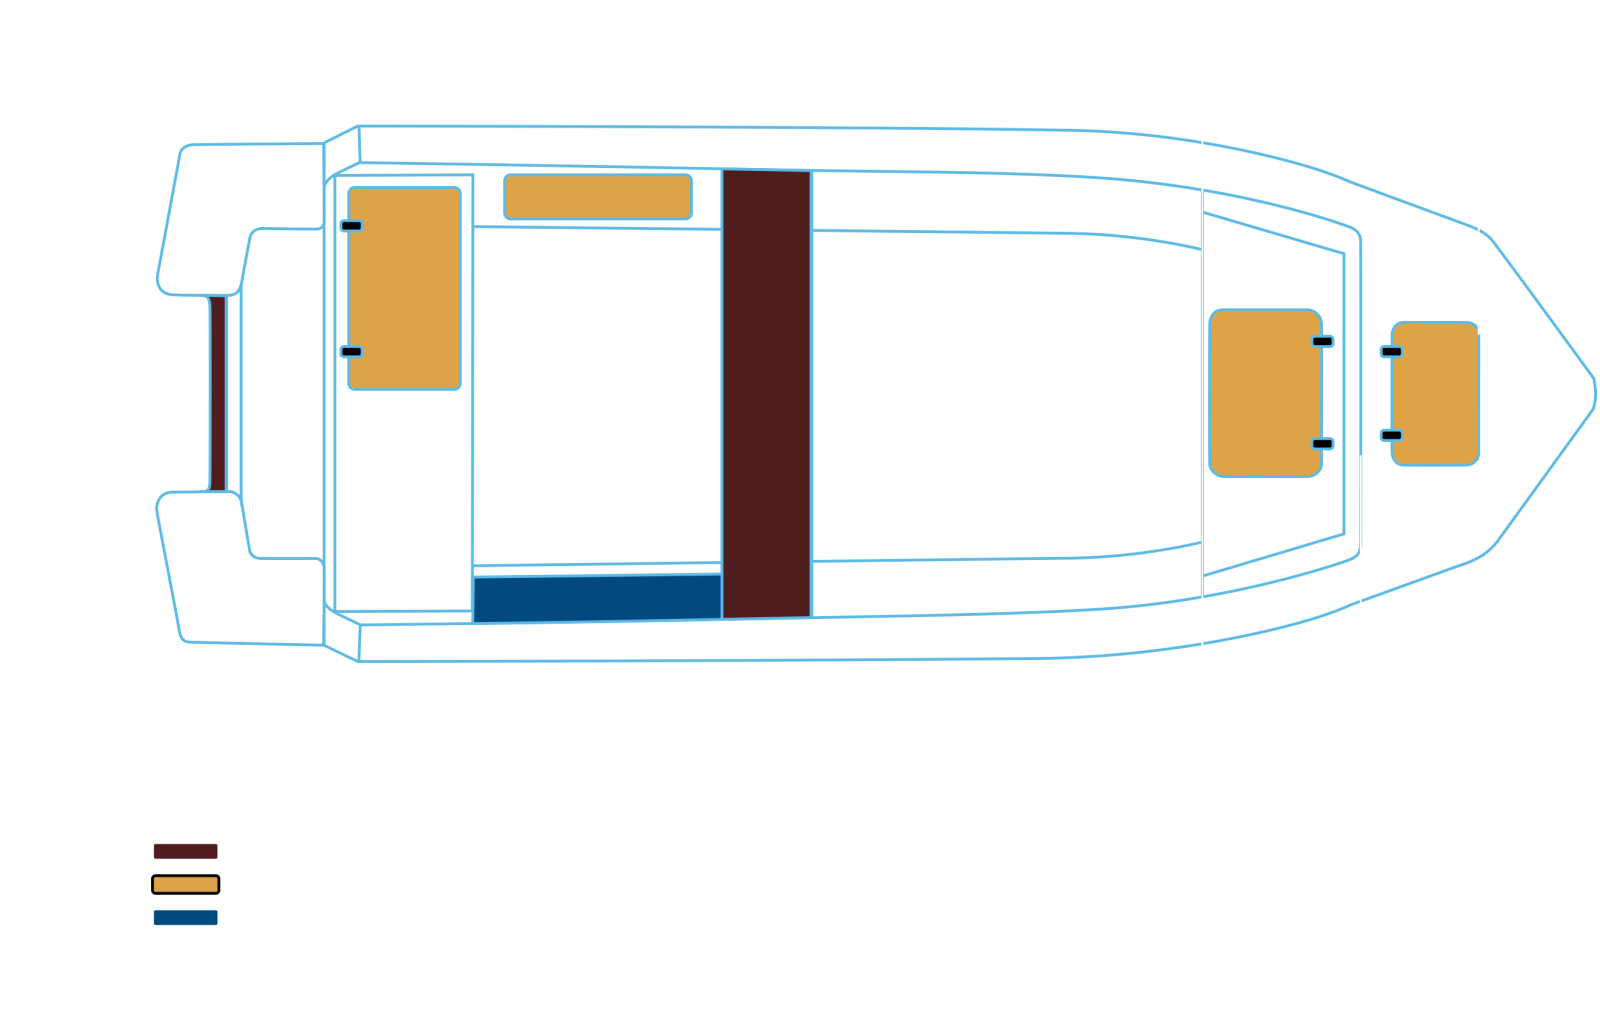 Swimmer 430